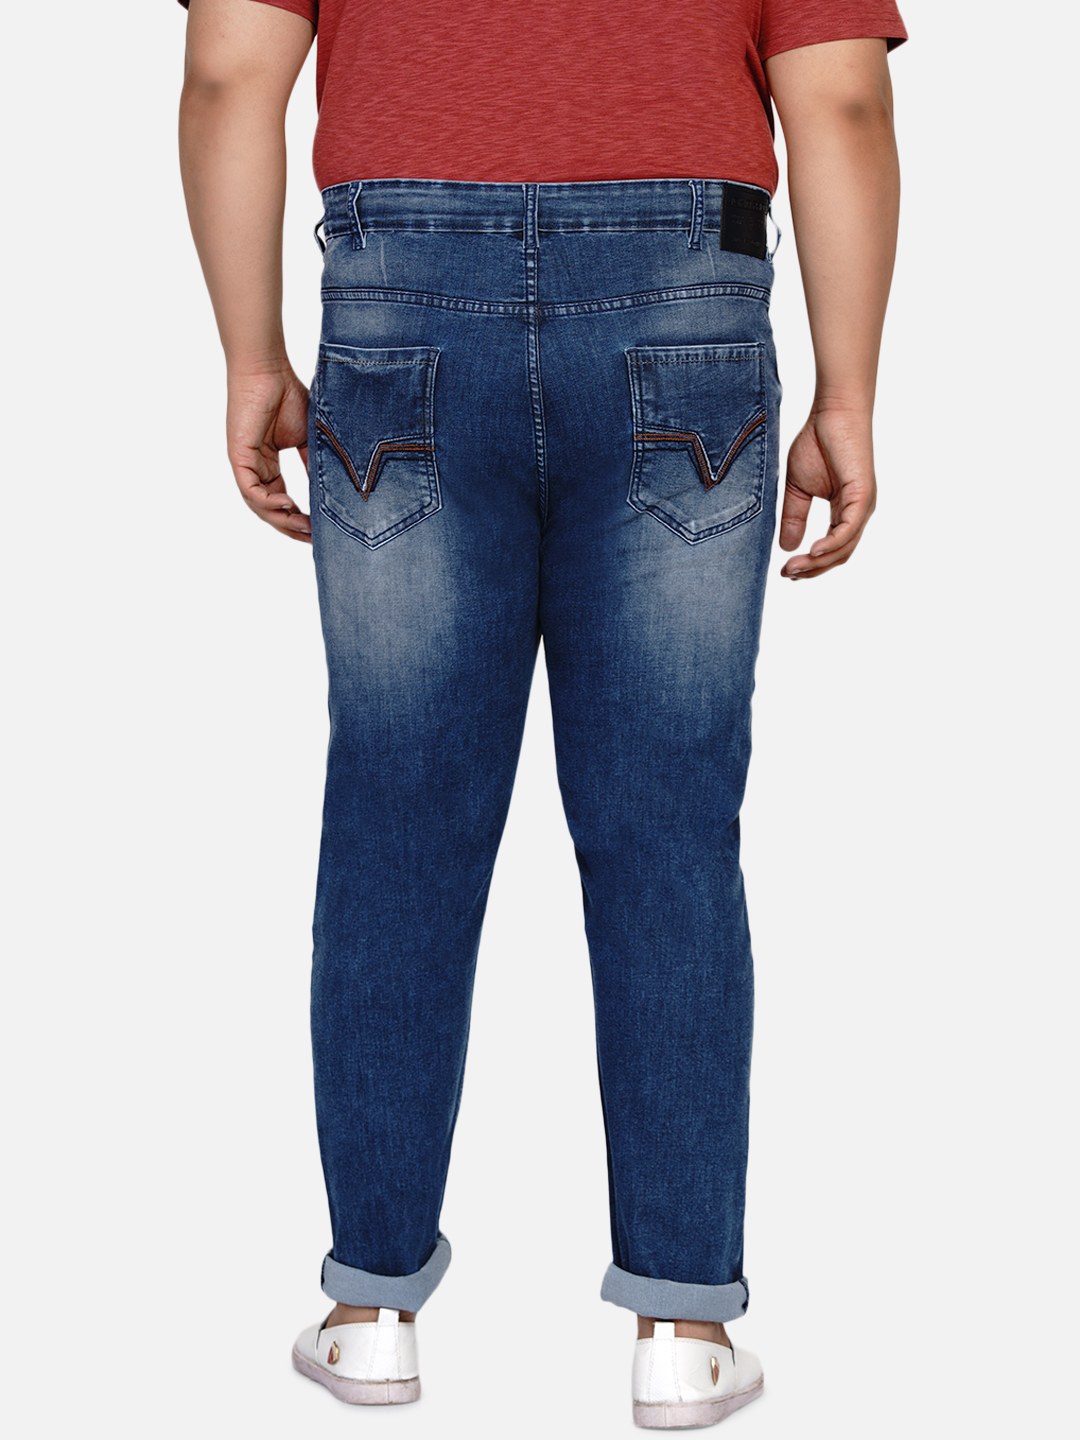 bottomwear/jeans/EJPJ25003/ejpj25003-5.jpg